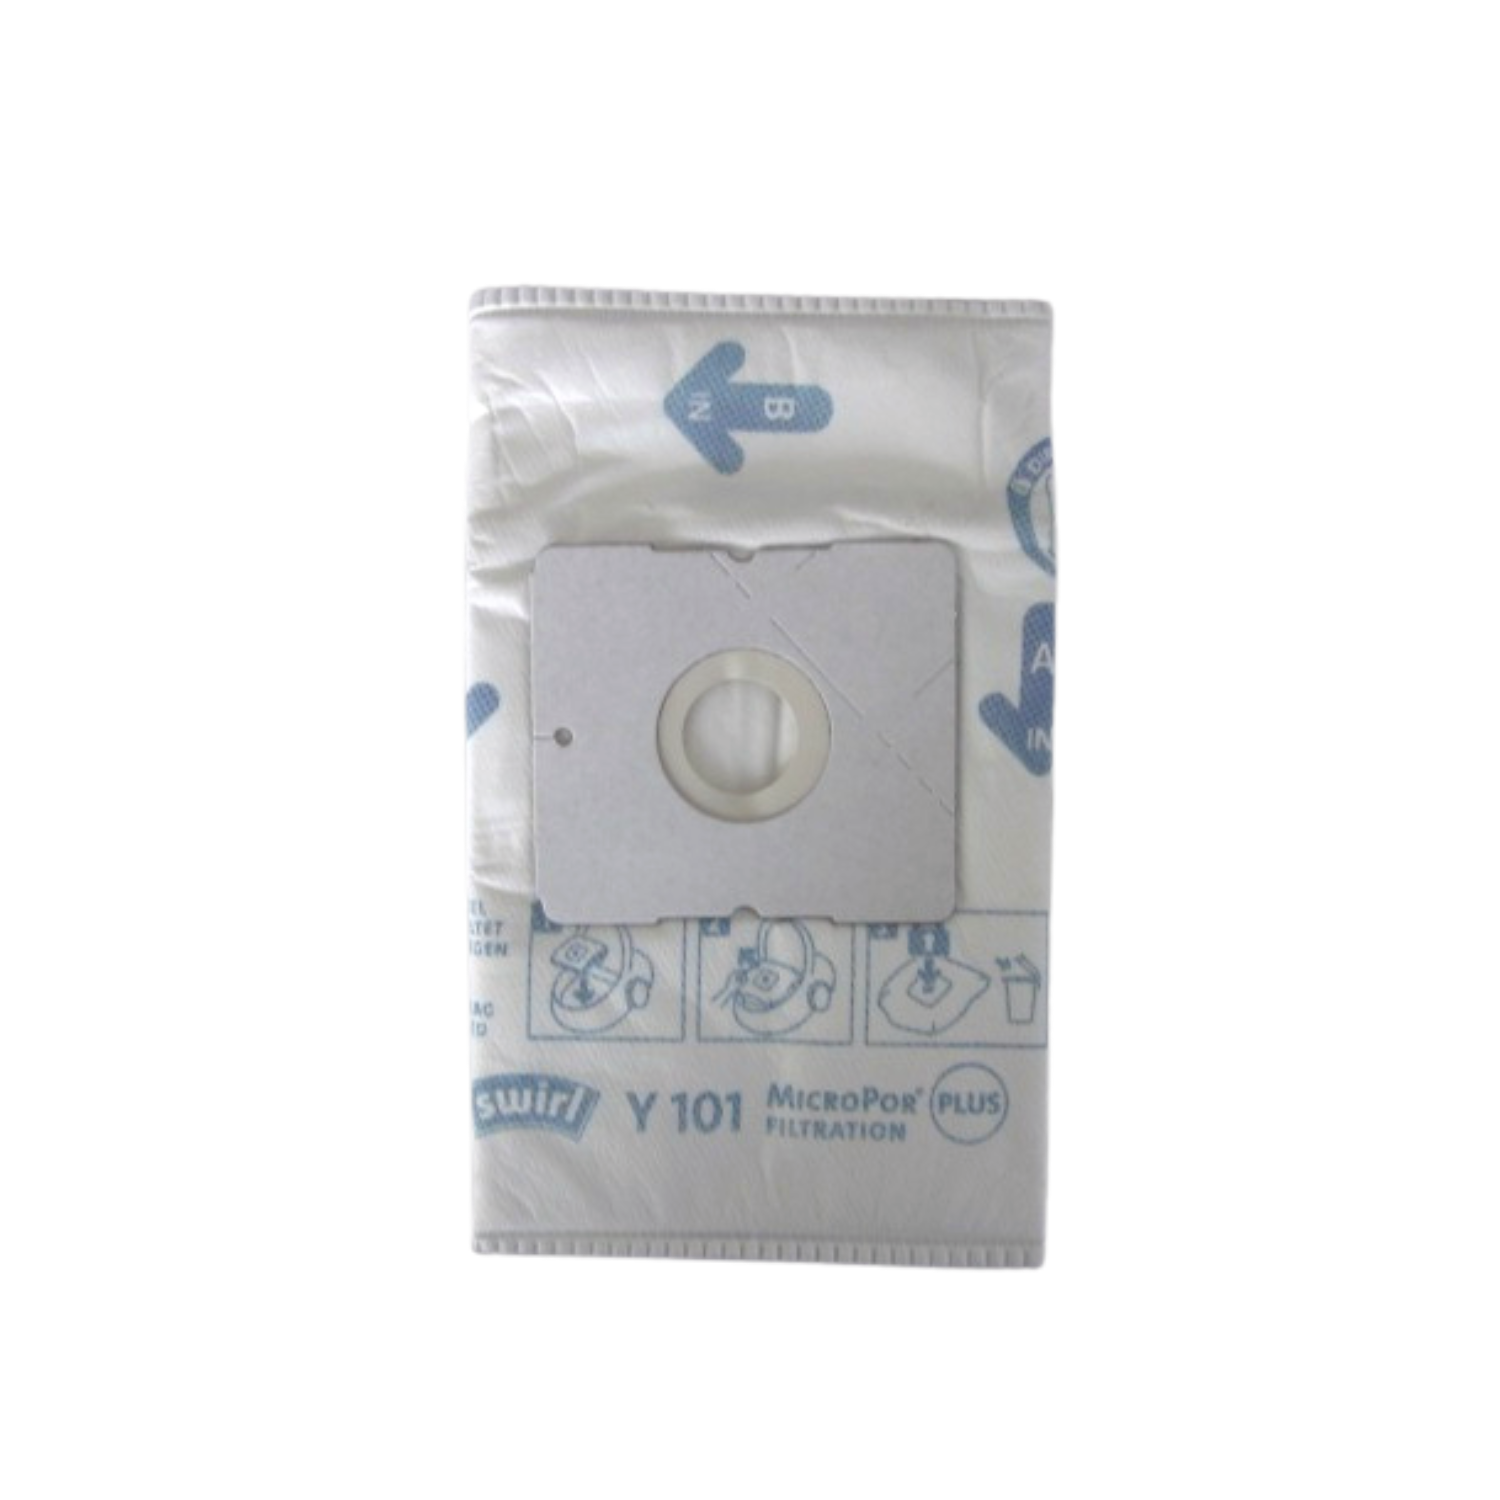 Staubsaugerbeutel MicroPor® SWIRL Y101